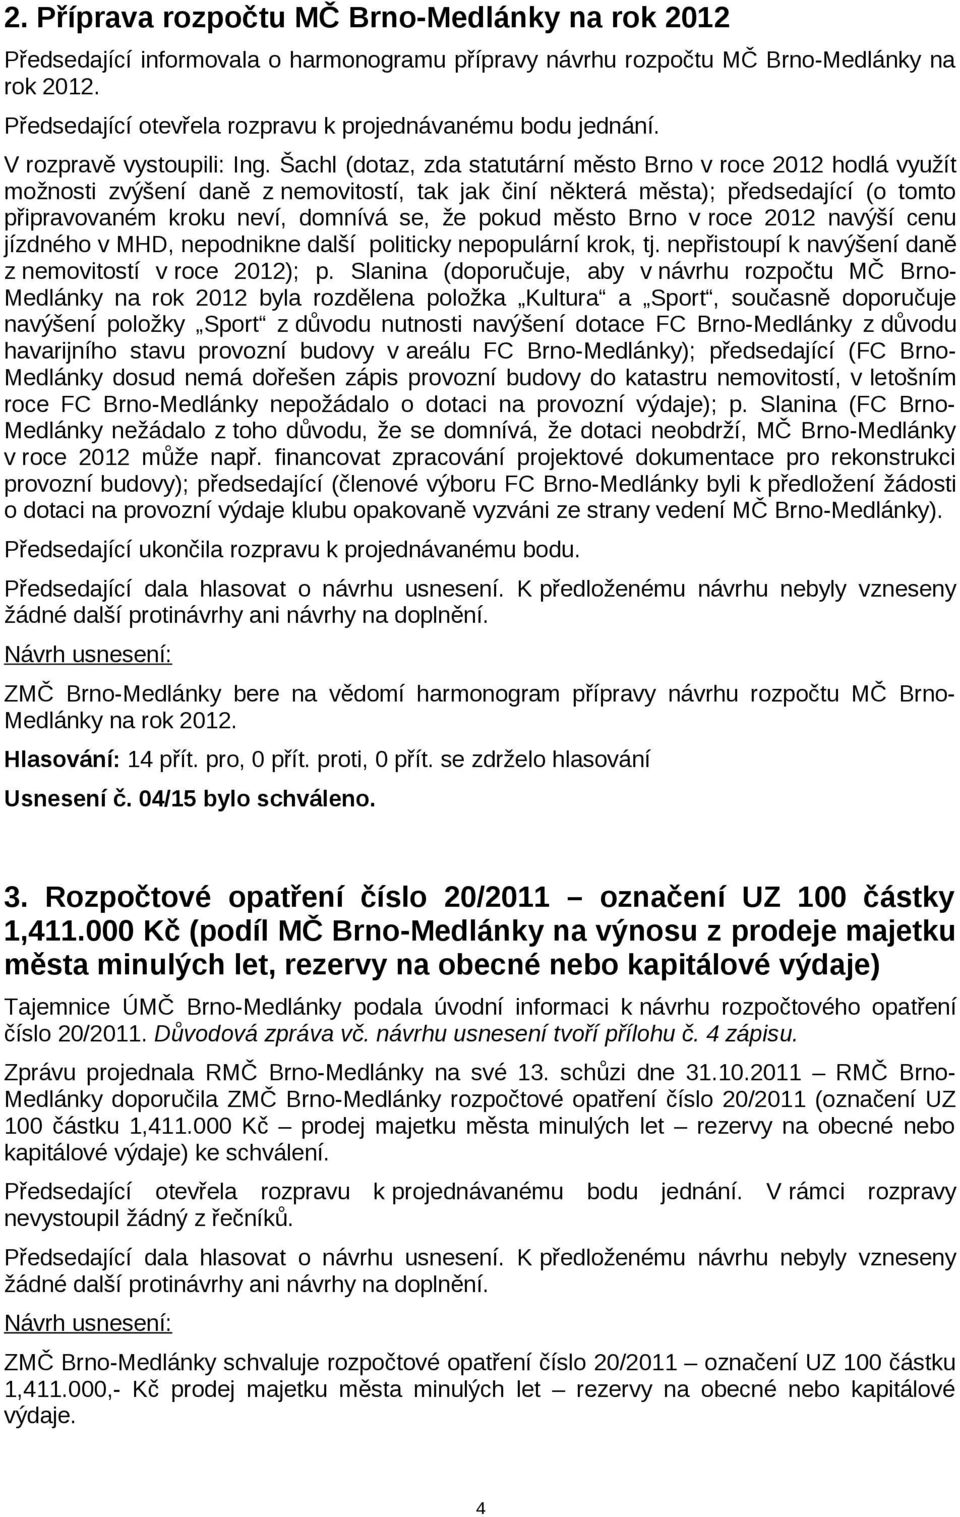 Šachl (dotaz, zda statutární město Brno v roce 2012 hodlá využít možnosti zvýšení daně z nemovitostí, tak jak činí některá města); předsedající (o tomto připravovaném kroku neví, domnívá se, že pokud